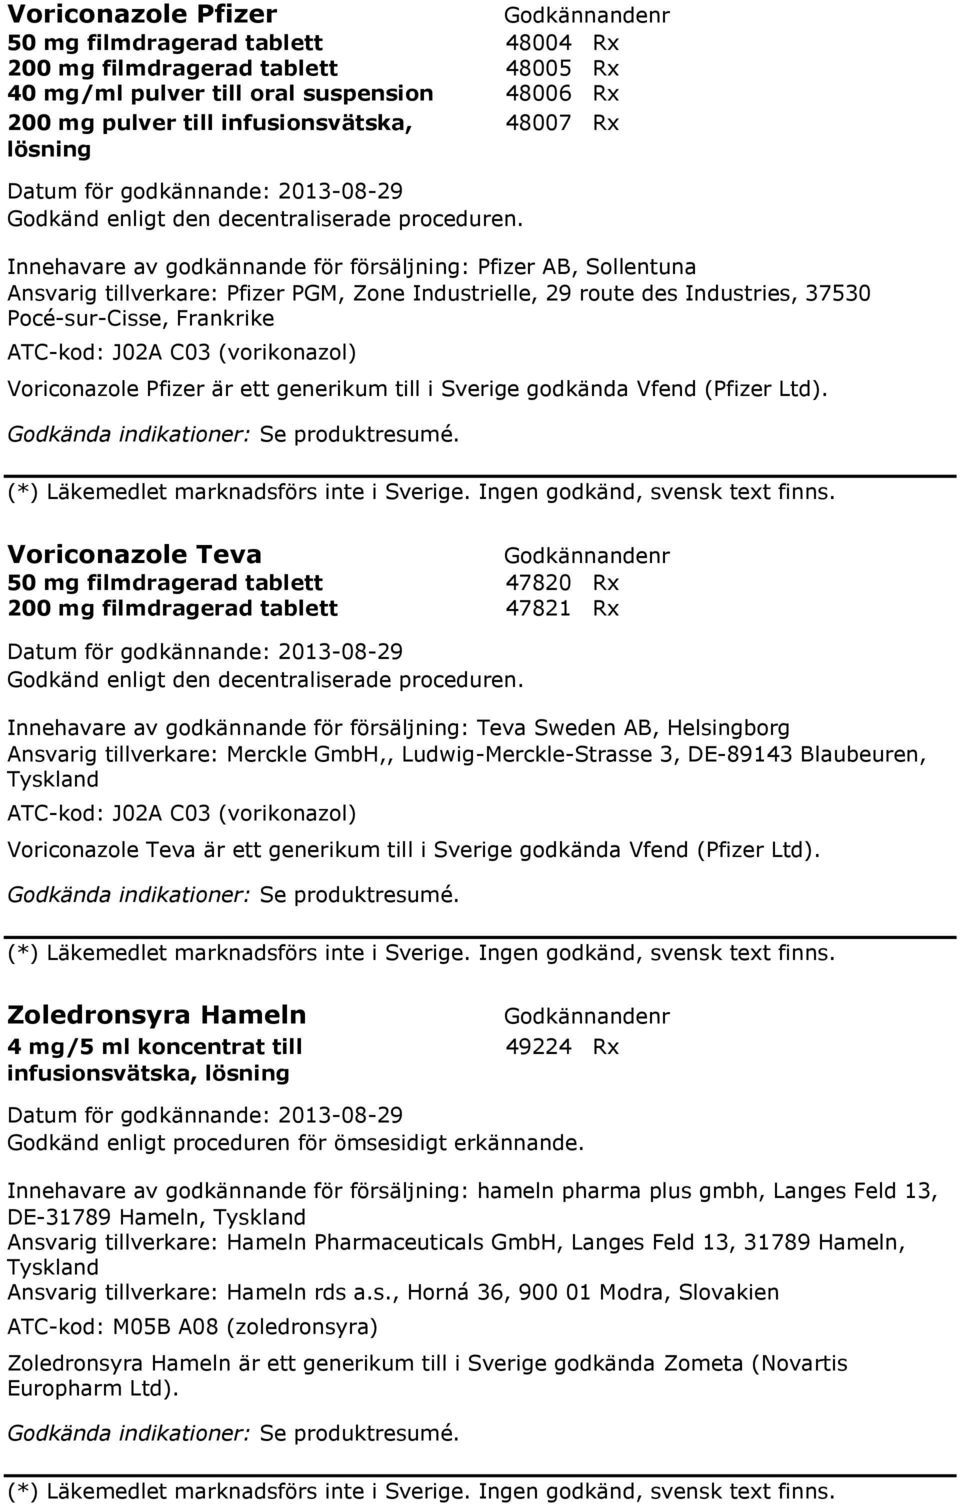 (vorikonazol) Voriconazole Pfizer är ett generikum till i Sverige godkända Vfend (Pfizer Ltd). (*) Läkemedlet marknadsförs inte i Sverige. Ingen godkänd, svensk text finns.